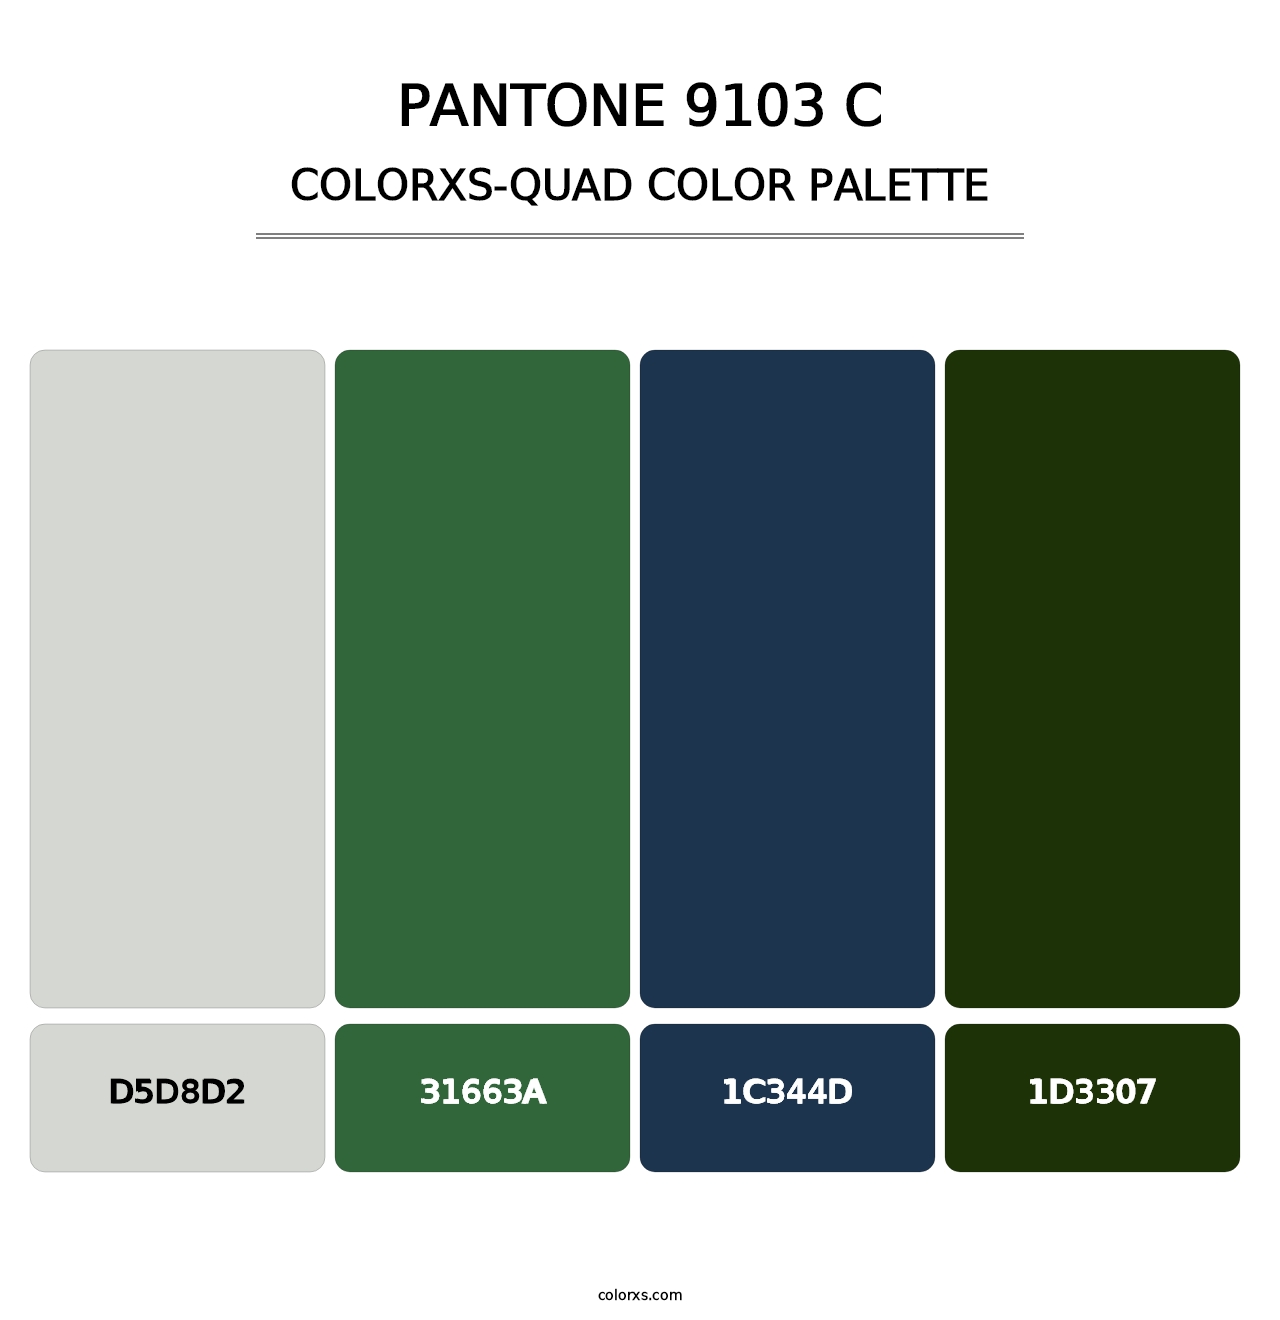 PANTONE 9103 C - Colorxs Quad Palette